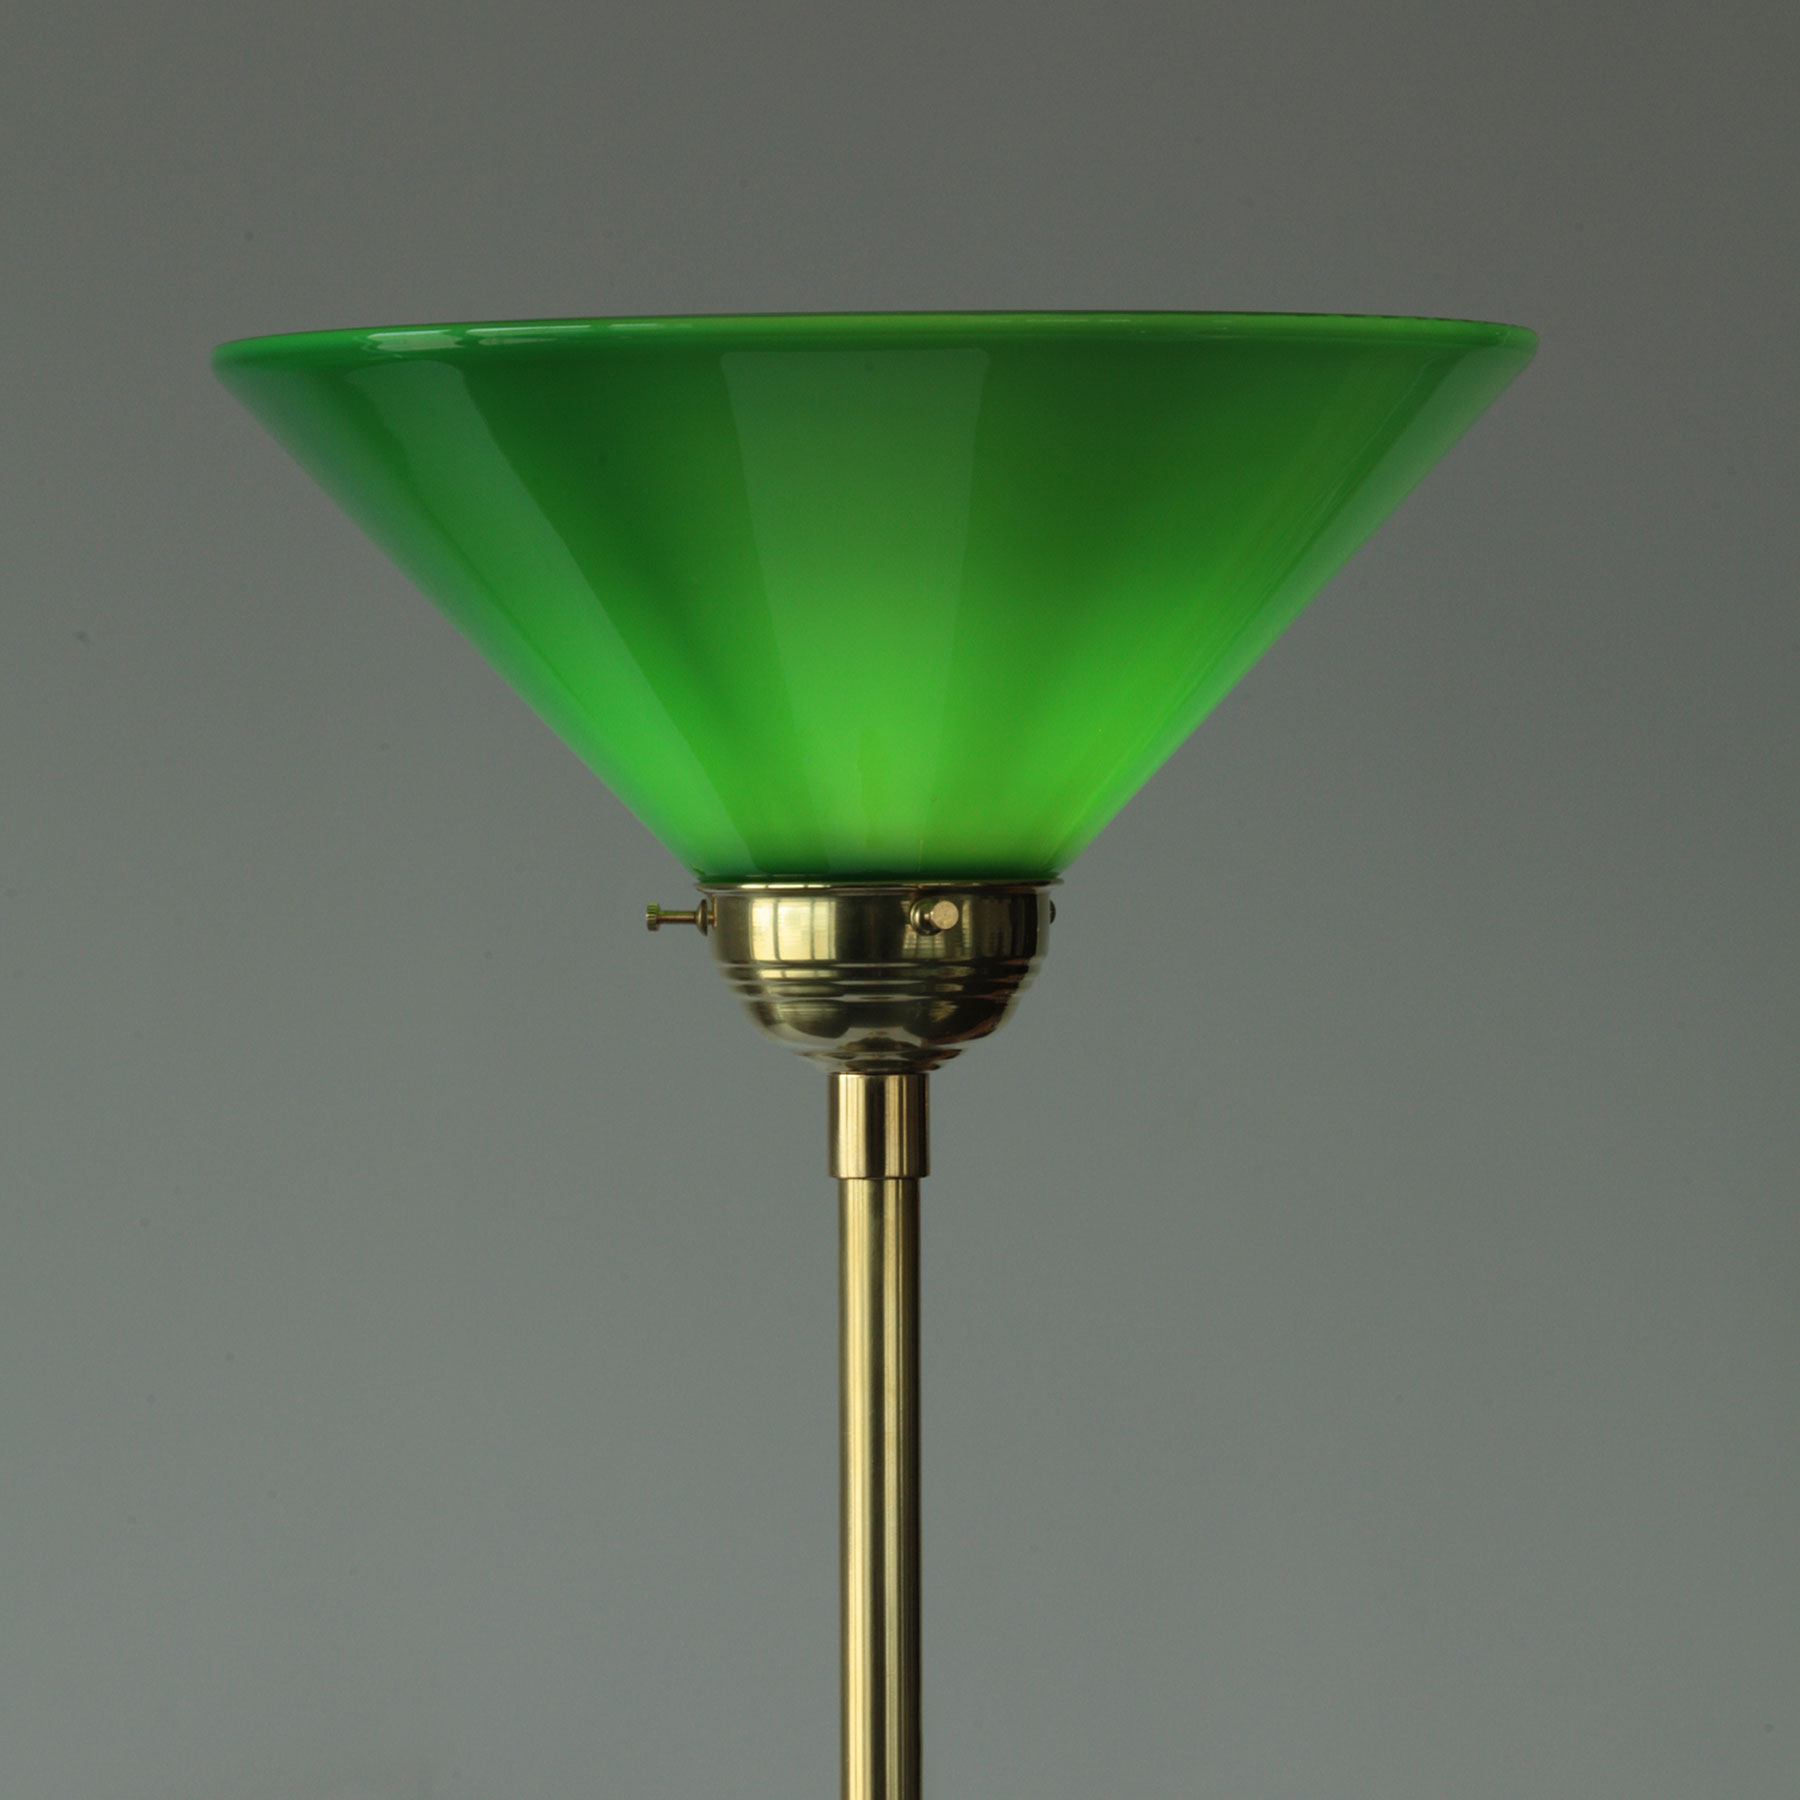 Art Nouveau Ceiling Floodlight with Cone Shaped Glass Shade: Messing poliert, unlackiert, mit grünem Kegel-Glasschirm (eingeschaltet)